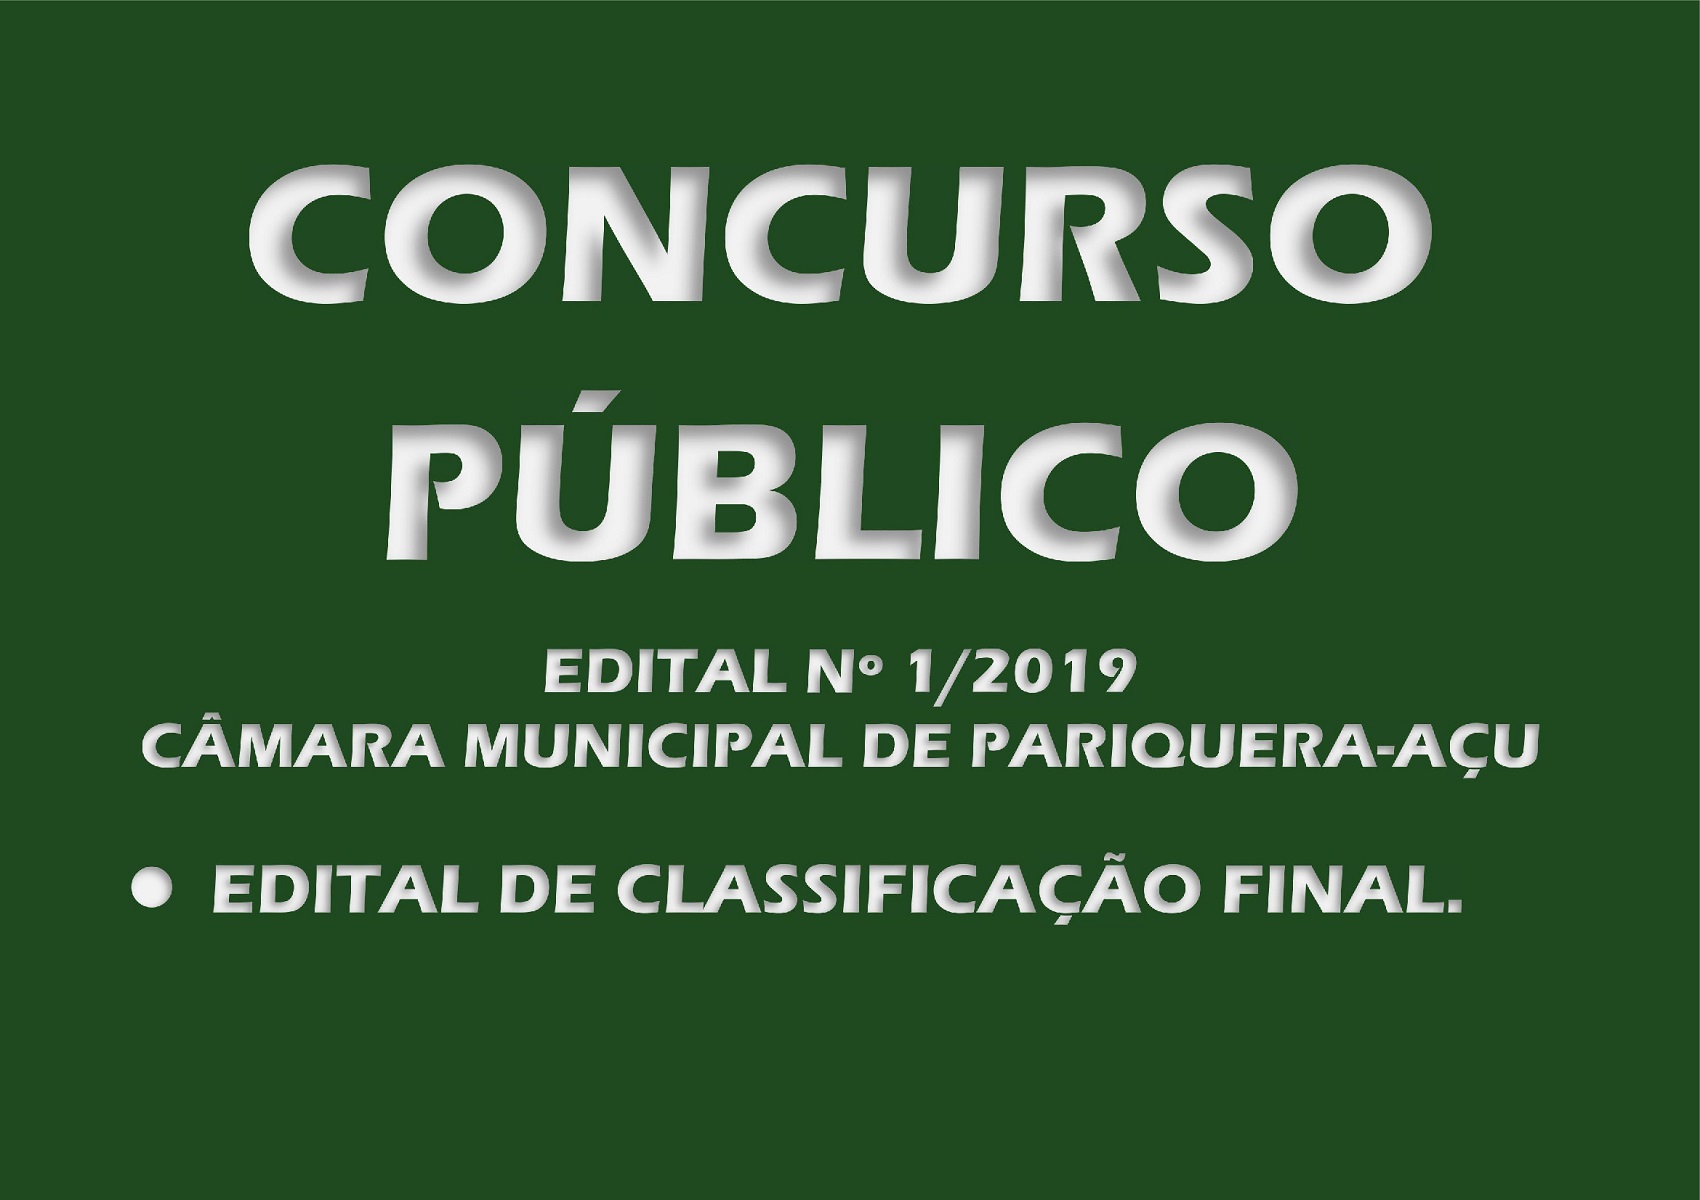 Edital de Classificação Final do Concurso Público nº 1/2019